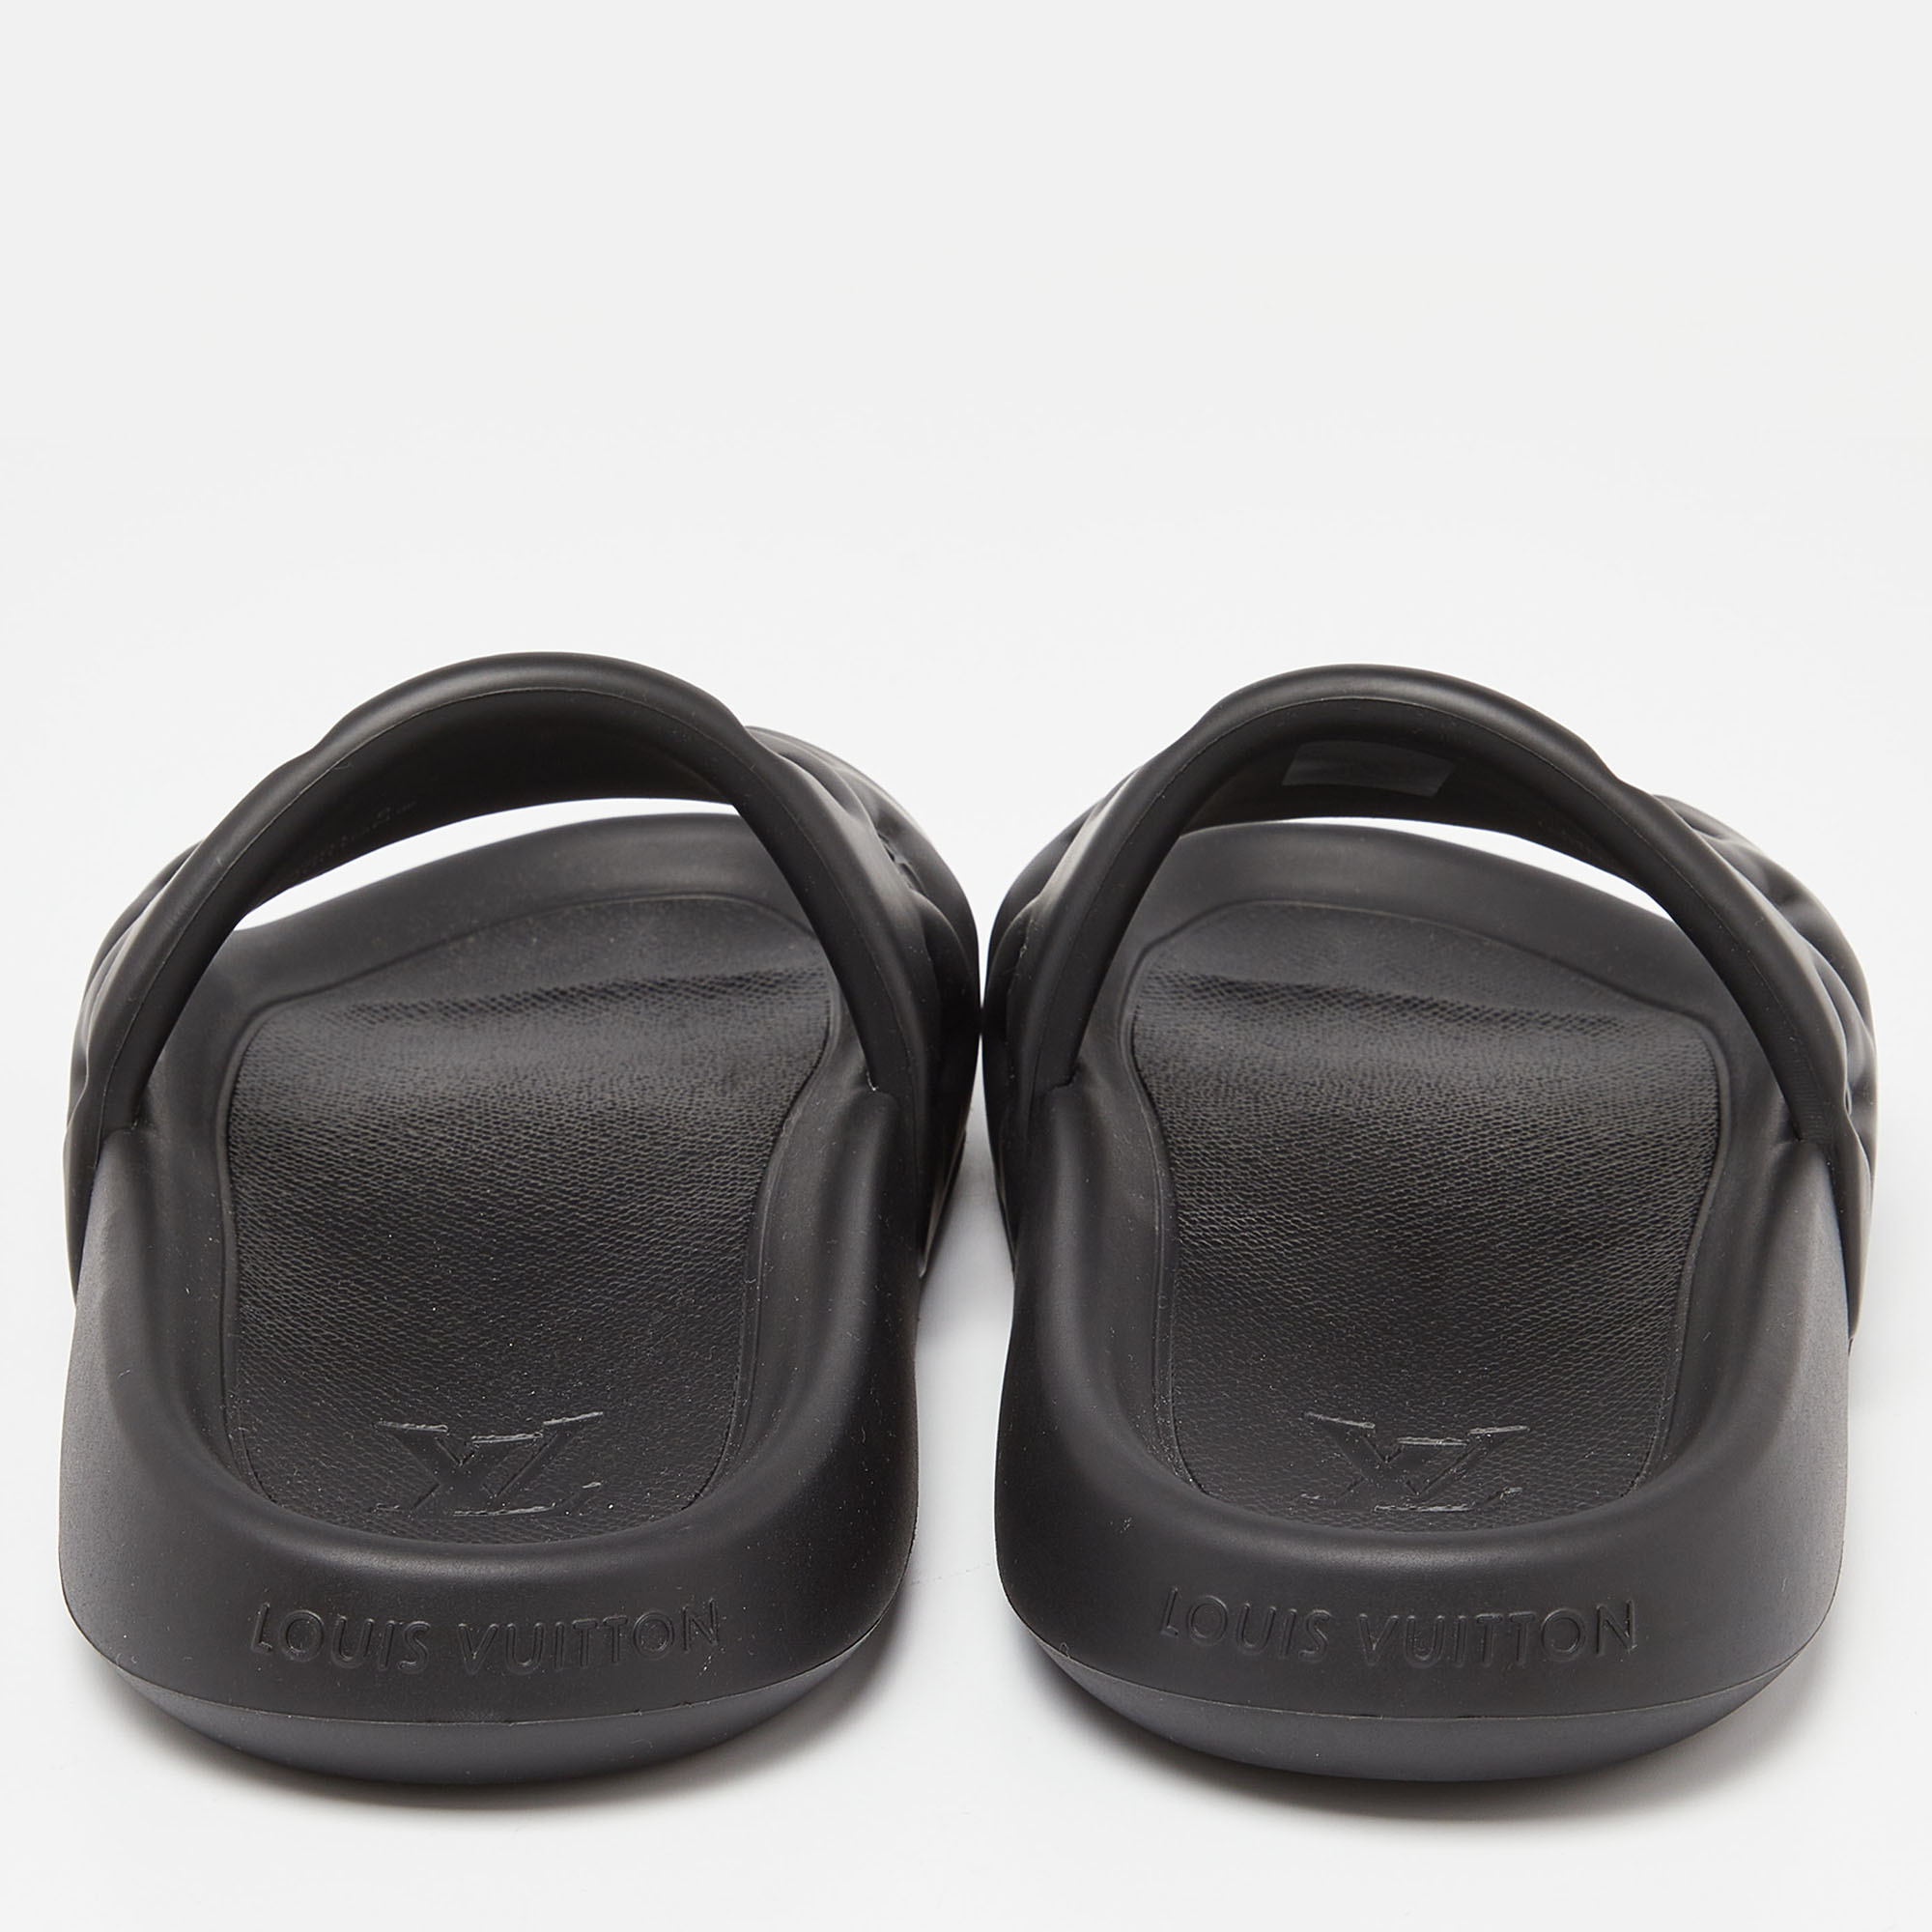 Louis Vuitton Black Monogram Rubber Waterfront Mule Sandals Size 42